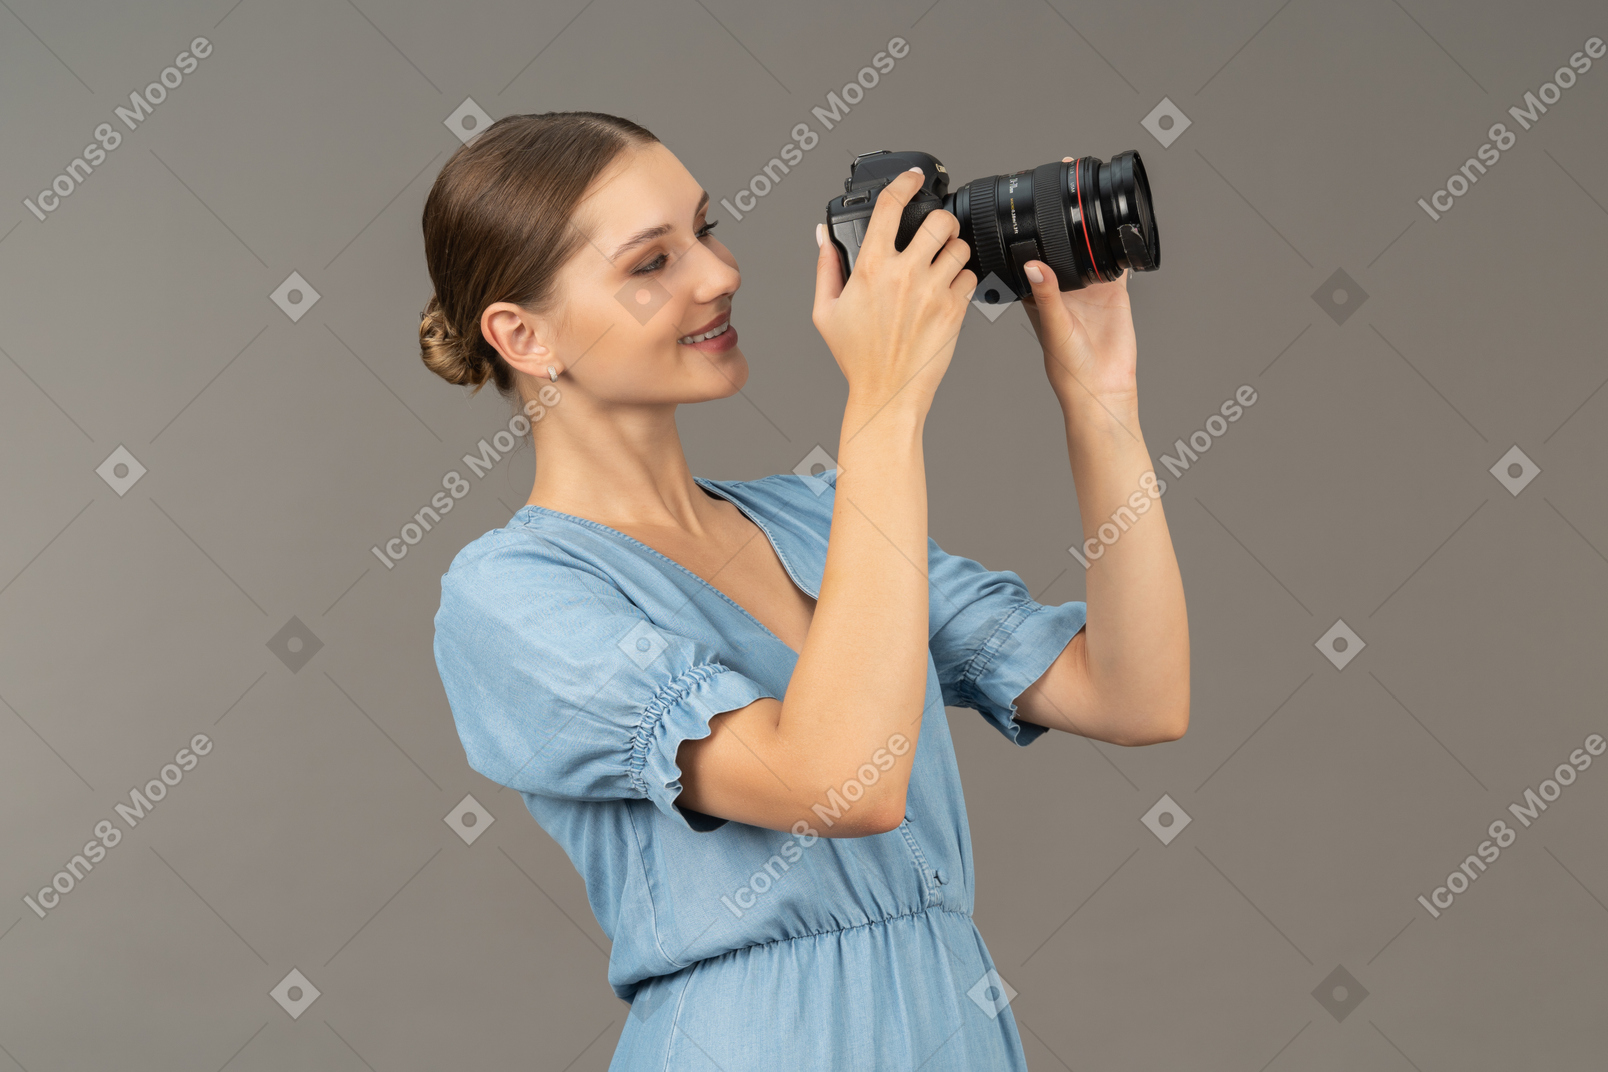 Vista de três quartos de uma jovem sorridente com vestido azul tirando uma foto